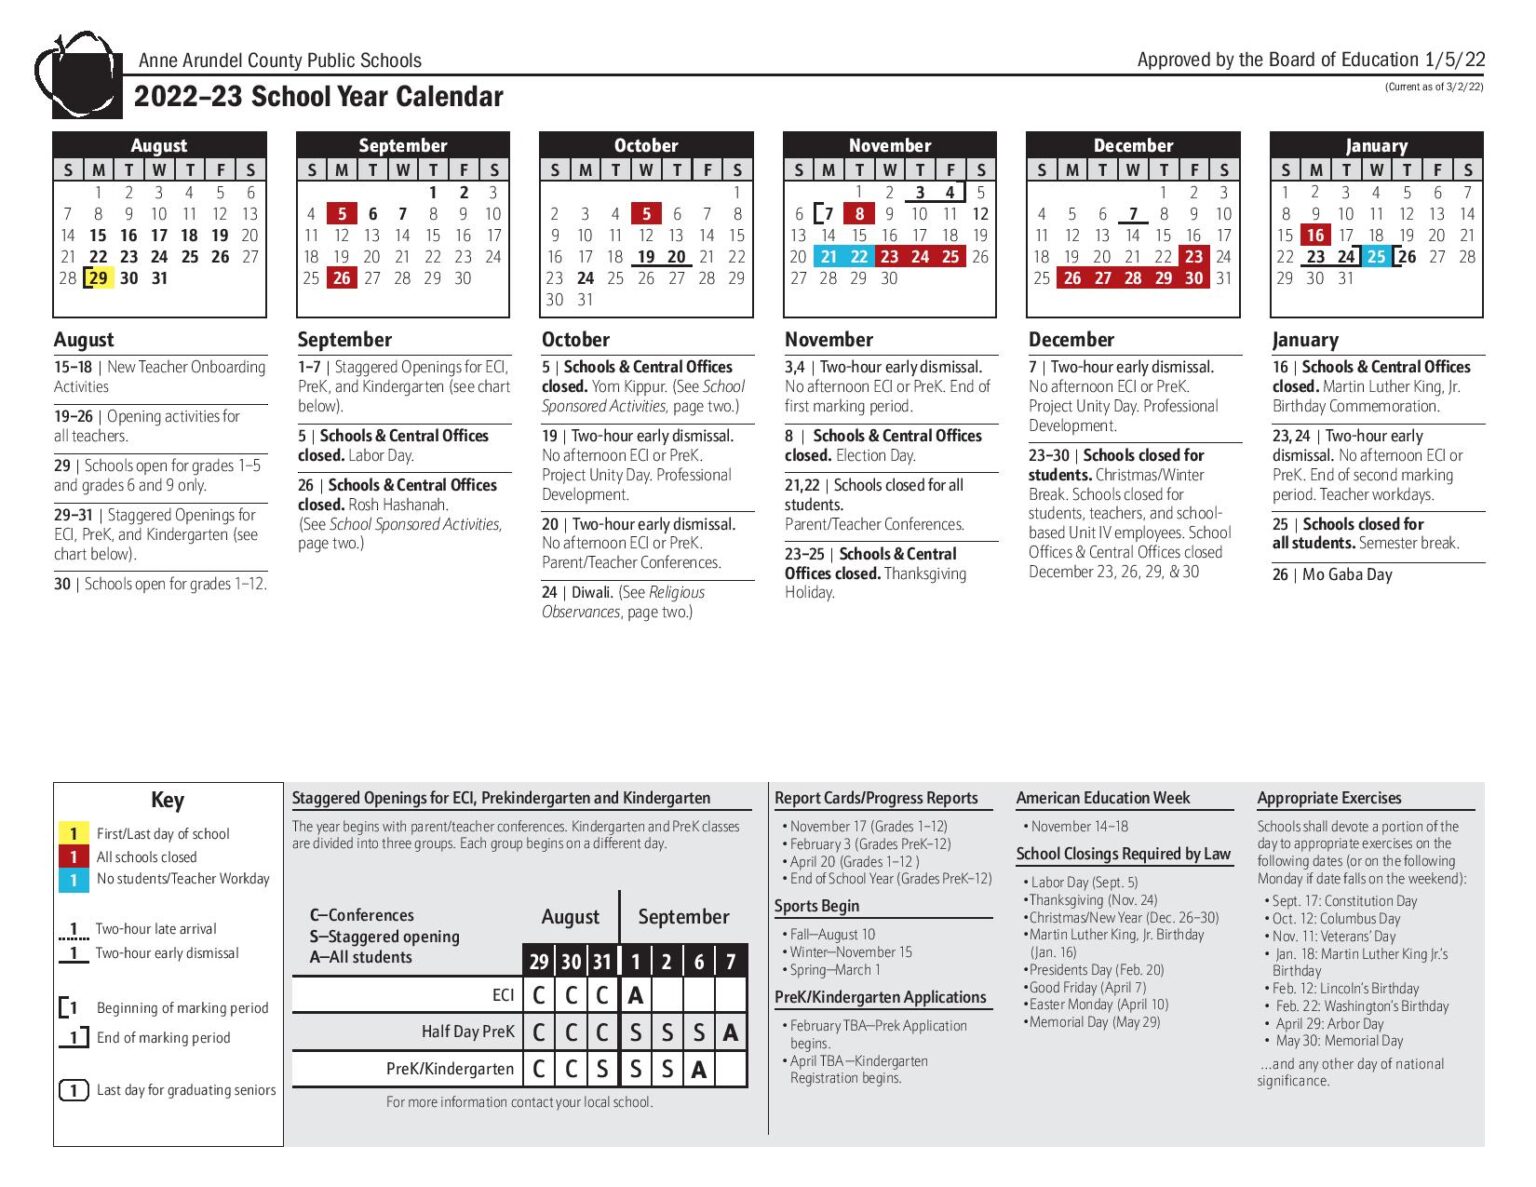 Anne Arundel County Public Schools Calendar 2022 2023 PDF